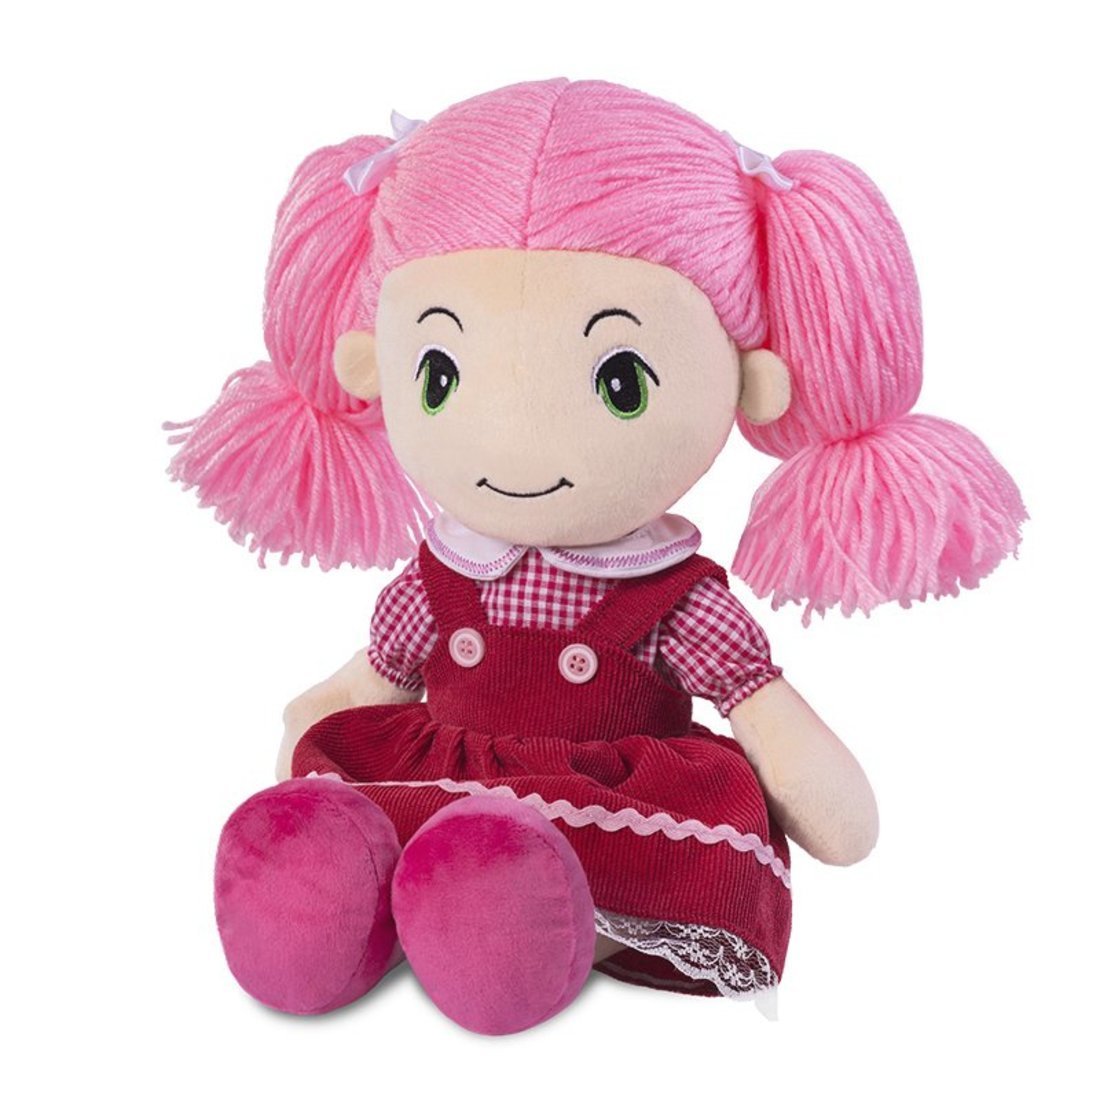 Мягкая игрушка Maxitoys Кукла Стильняшка в розовом платье MT-HH-05042026, 40 см